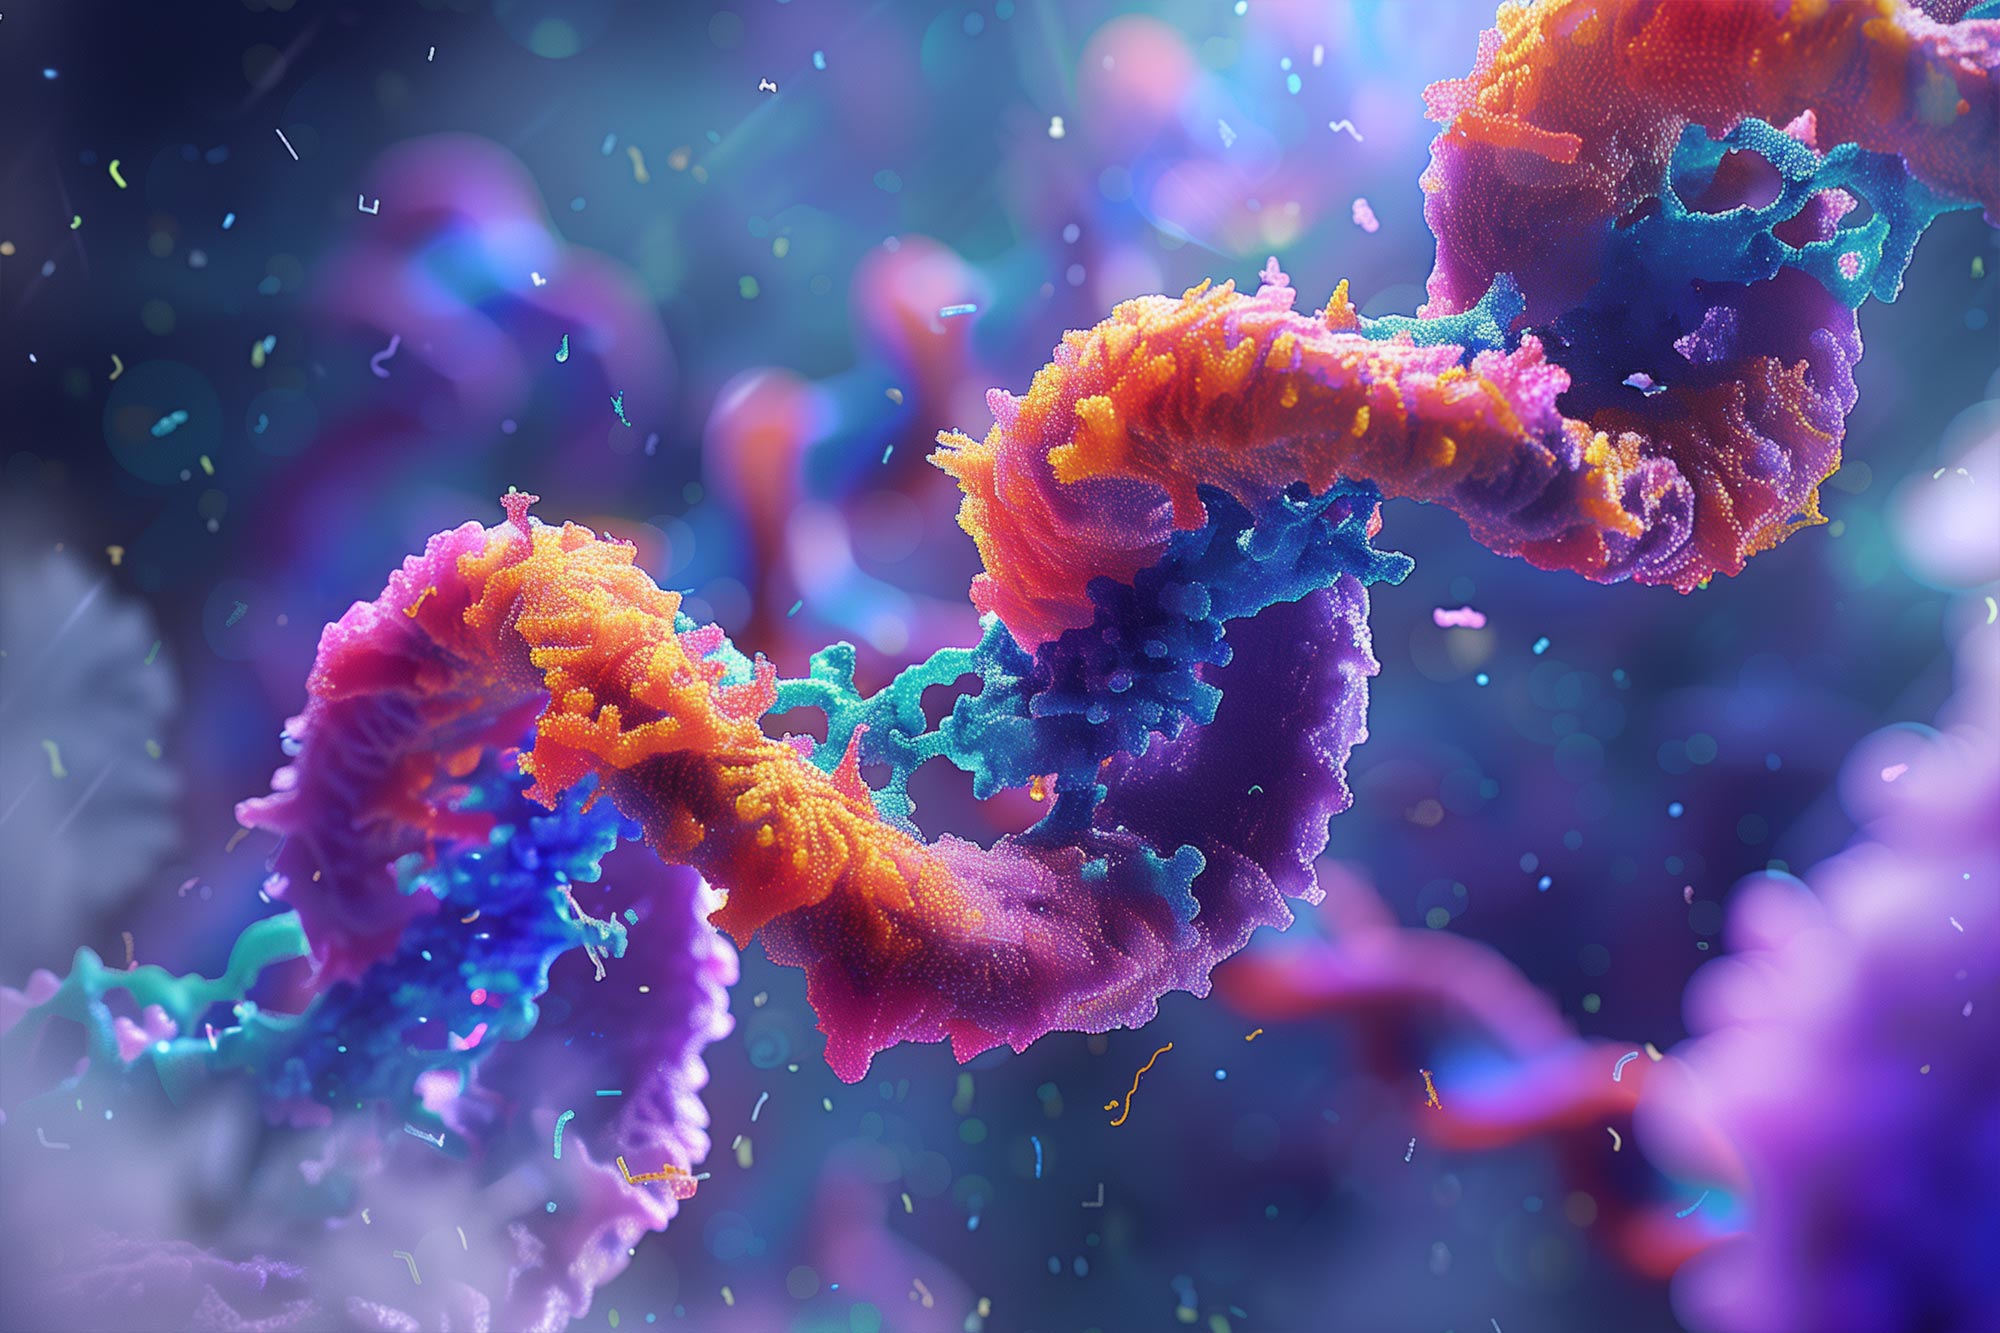 Mengungkap rahasia kehidupan menggunakan kode kuno RNA